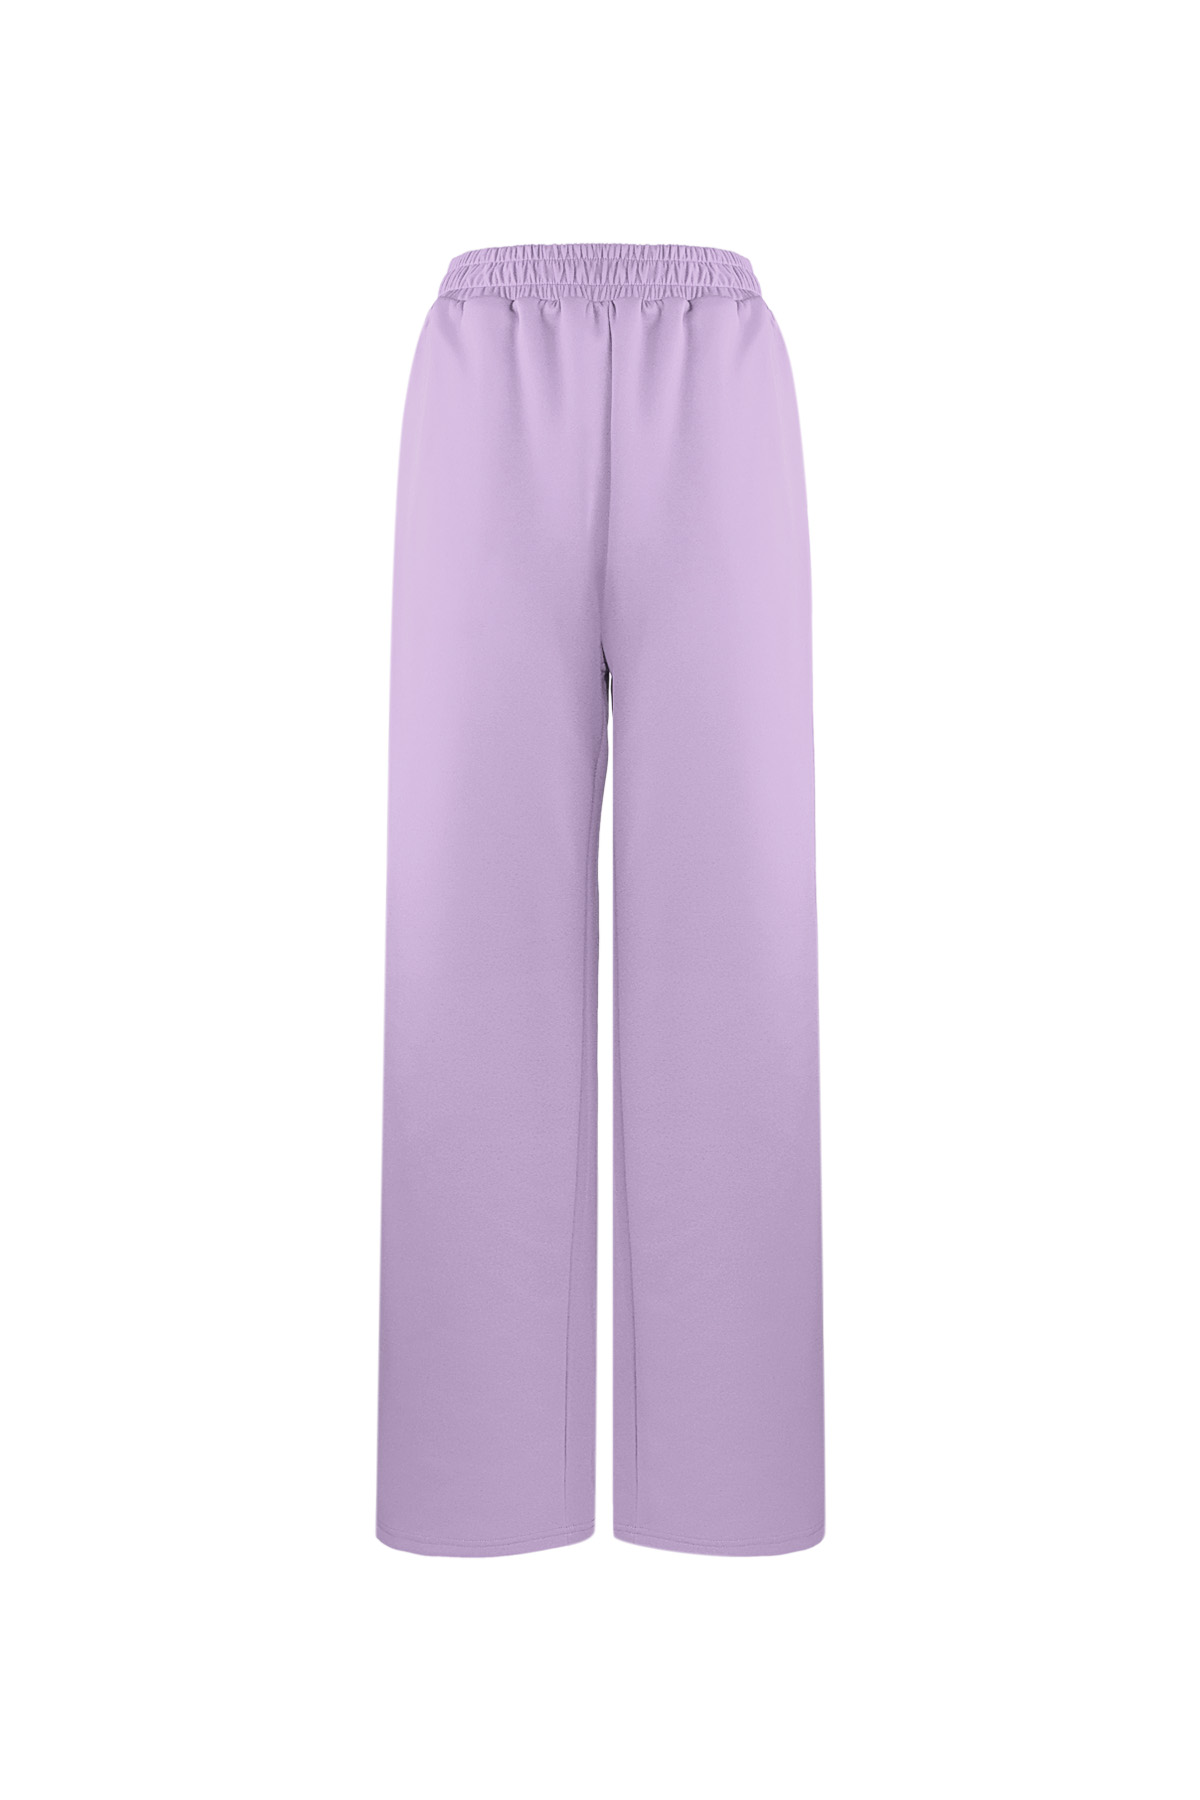 Pantalon indispensable à rayures - violet S